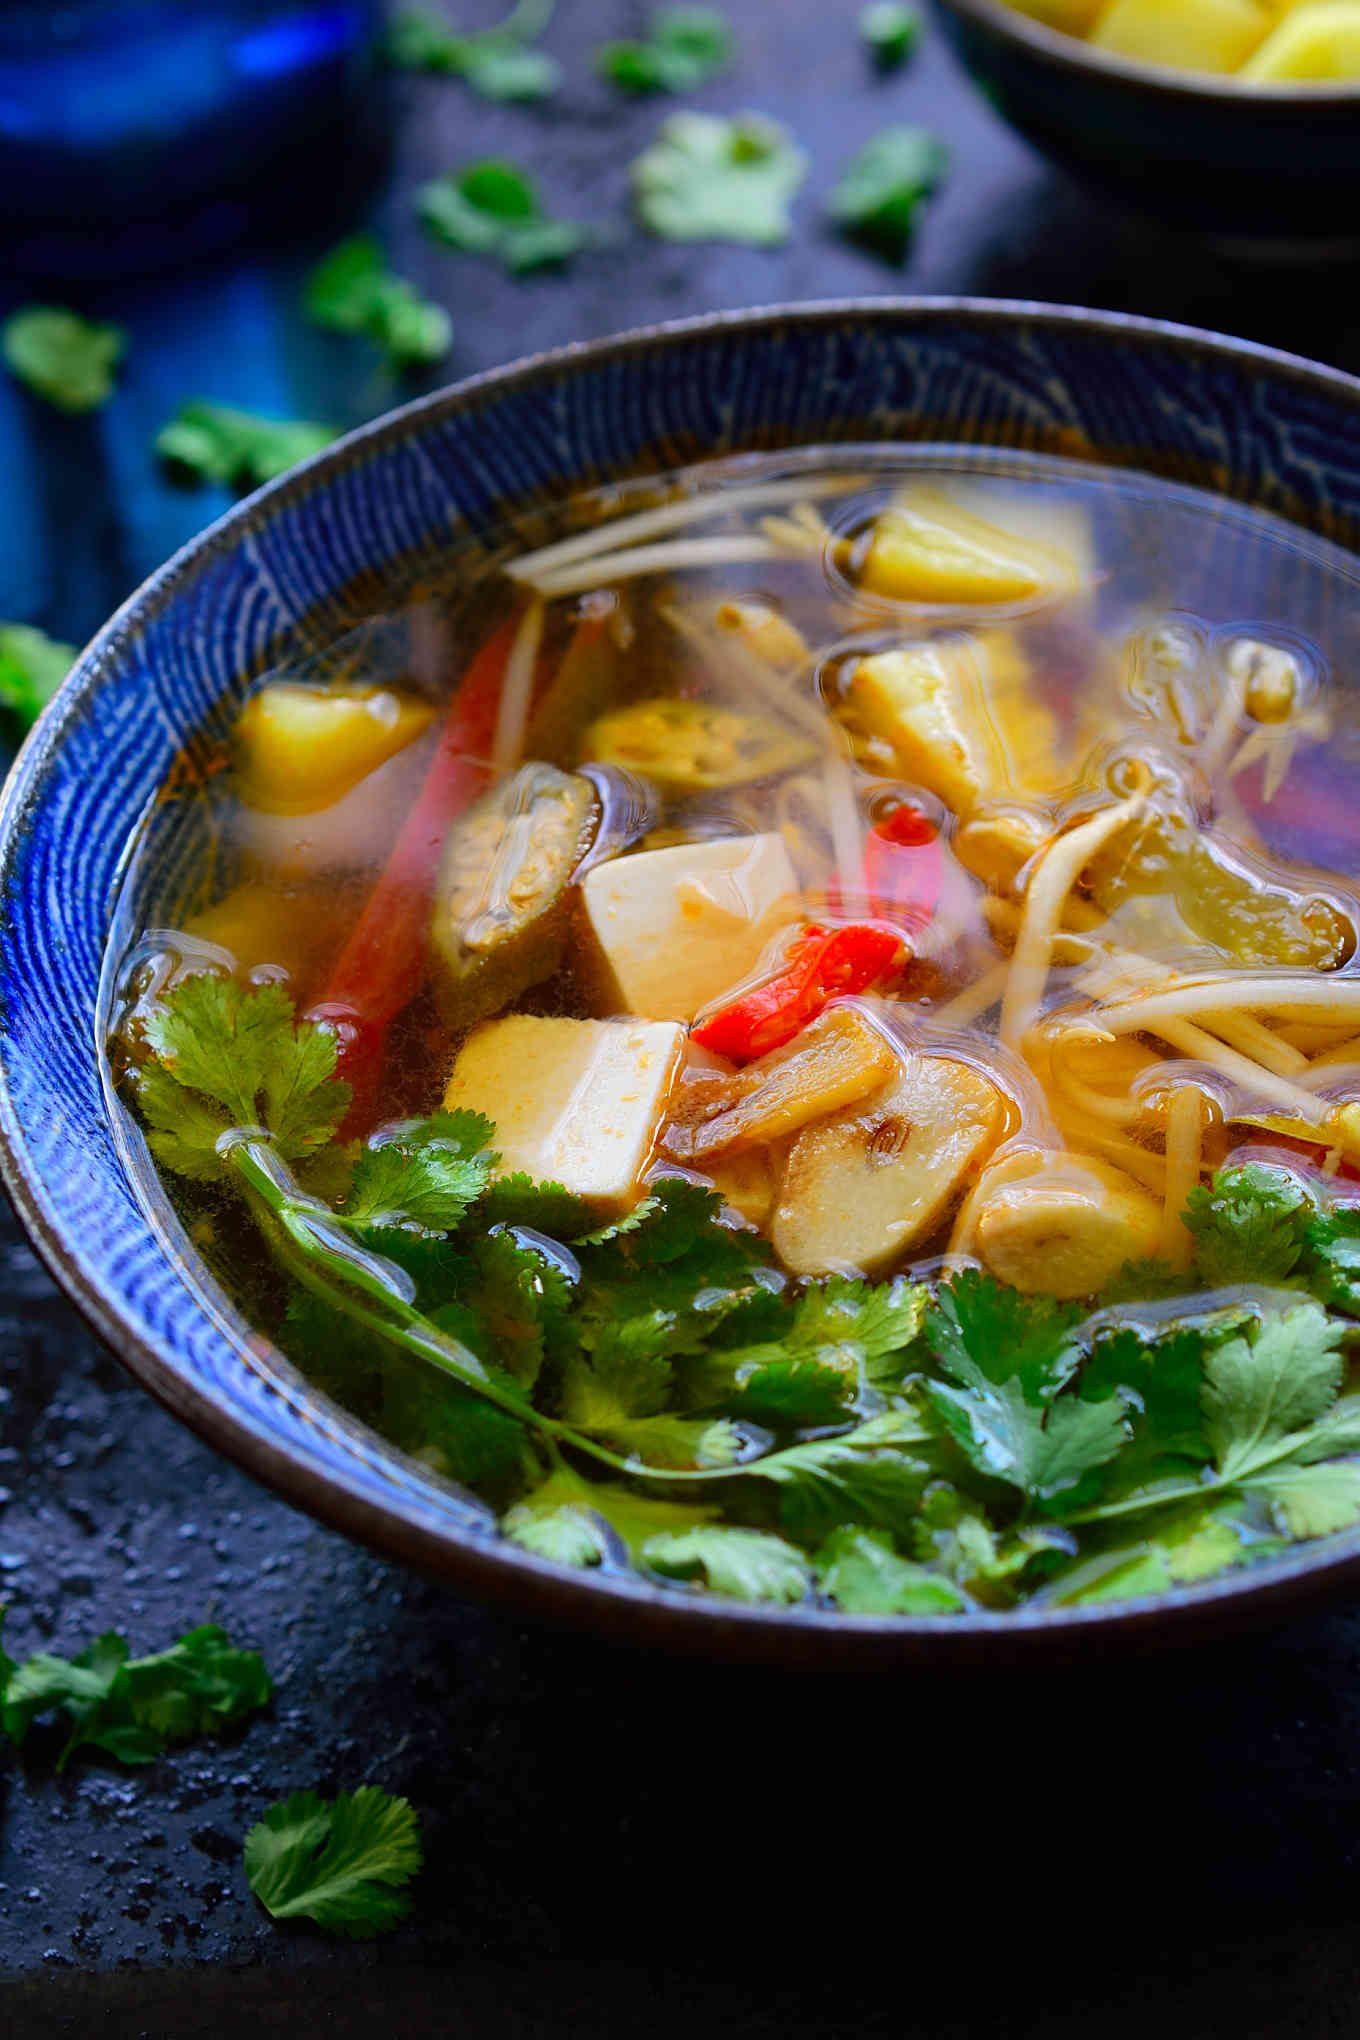 Esta receta de sopa agria vietnamita está lista en tan sólo 15 minutos, y tan llena de sabores y texturas complejas que podría ser la sopa más rica que jamás hayas probado. Esta es una versión vegetariana de canh chua con tamarindo, piña, okra y tofu sedoso. Parece una combinación extraña, pero estoy segura de que se convertirá rápidamente en tu nueva sopa favorita!